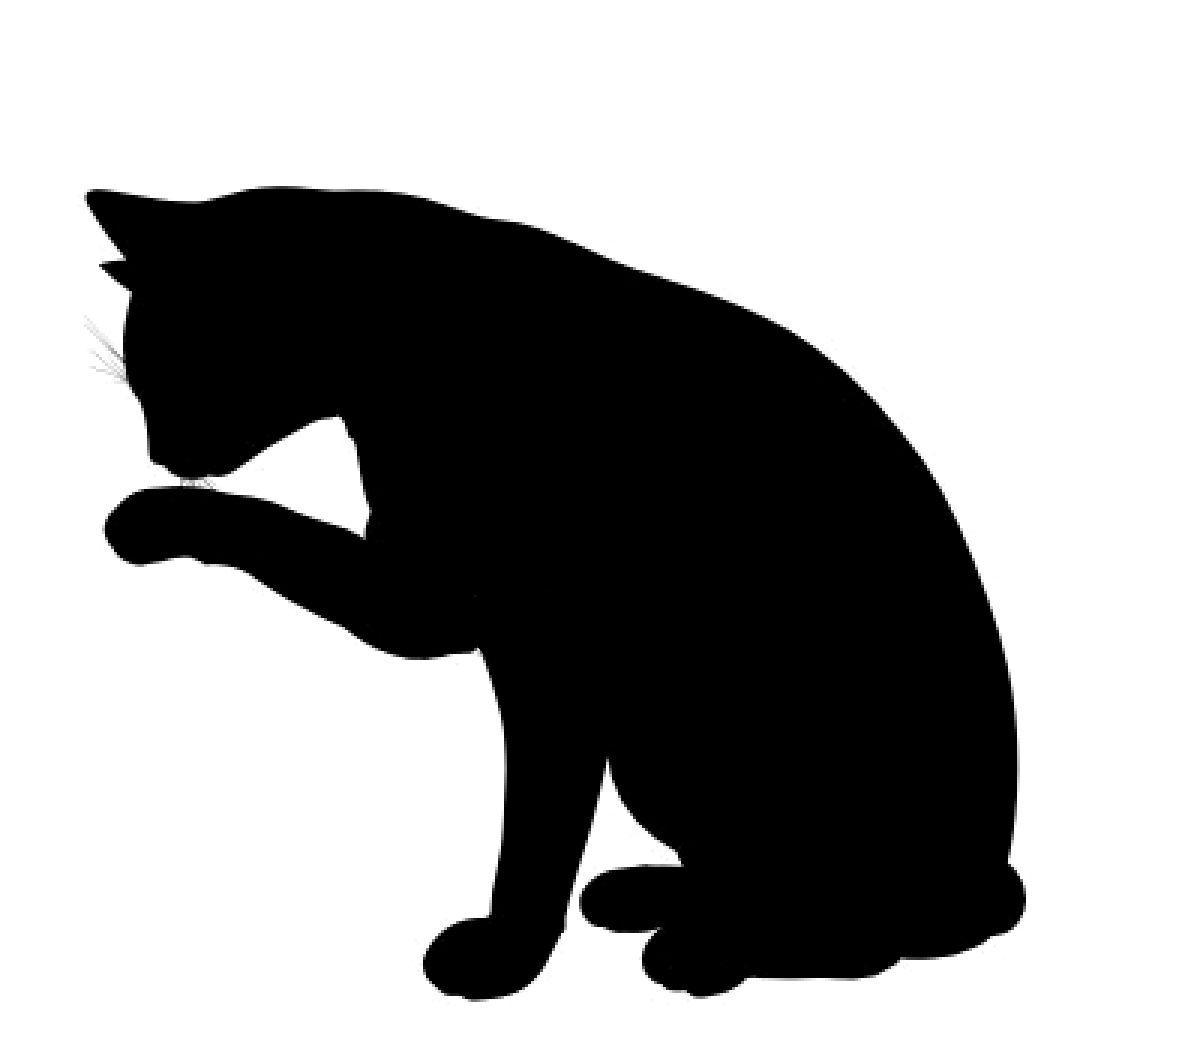 5682512-black-cat-art-illustration-silhouette-on-a-white-background.jpg